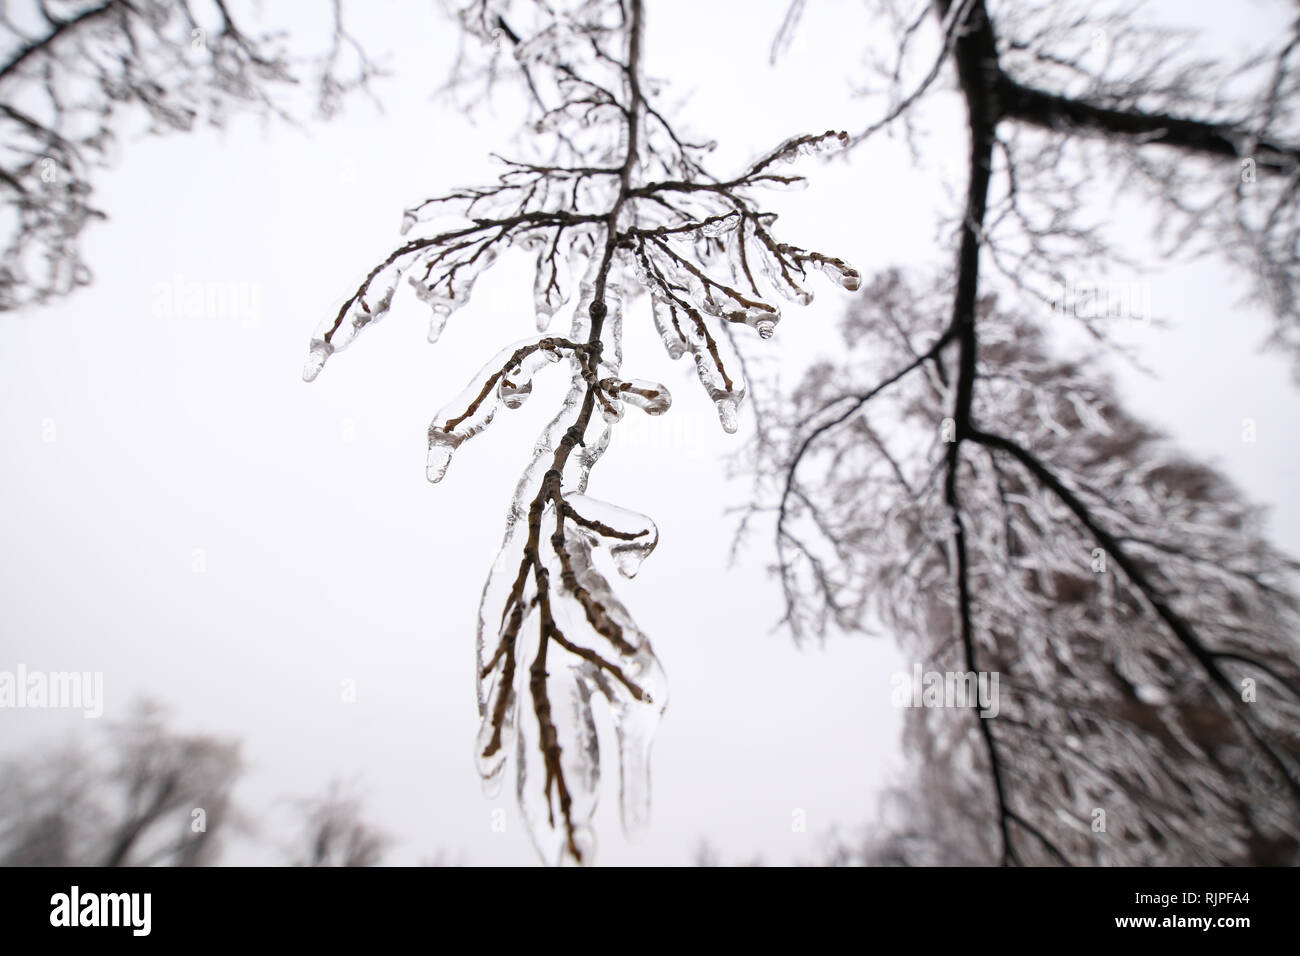 Details mit gefrorenen Vegetation nach einem Regen wetter Phänomen Stockfoto